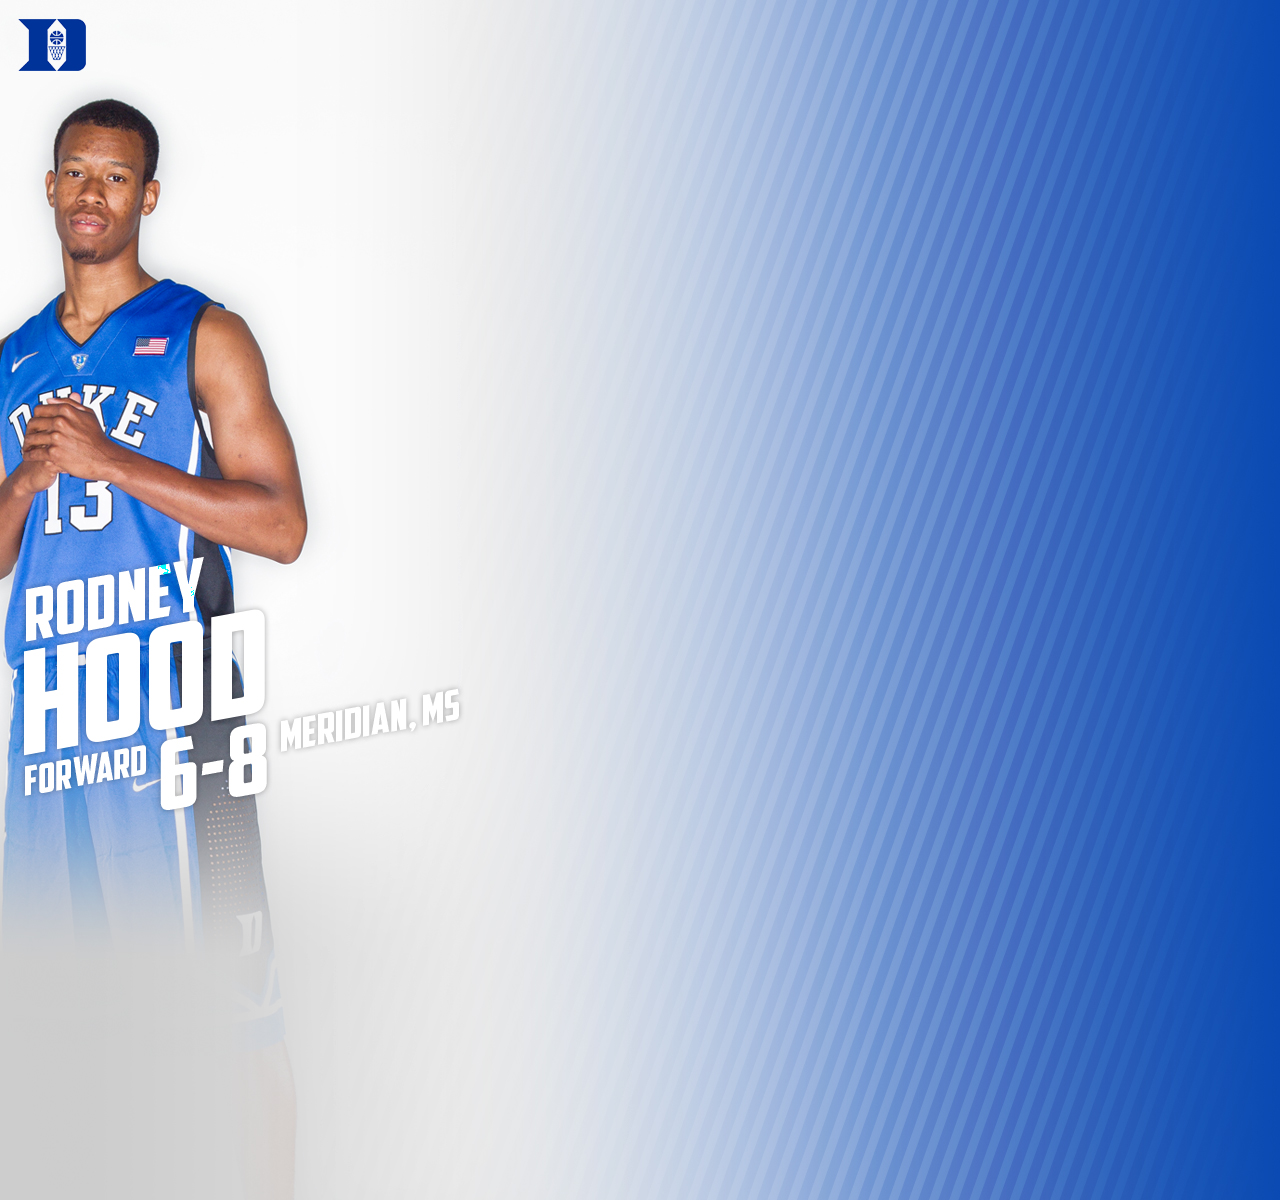 Duke Blue Pla The Official Website Of Men S Basketball